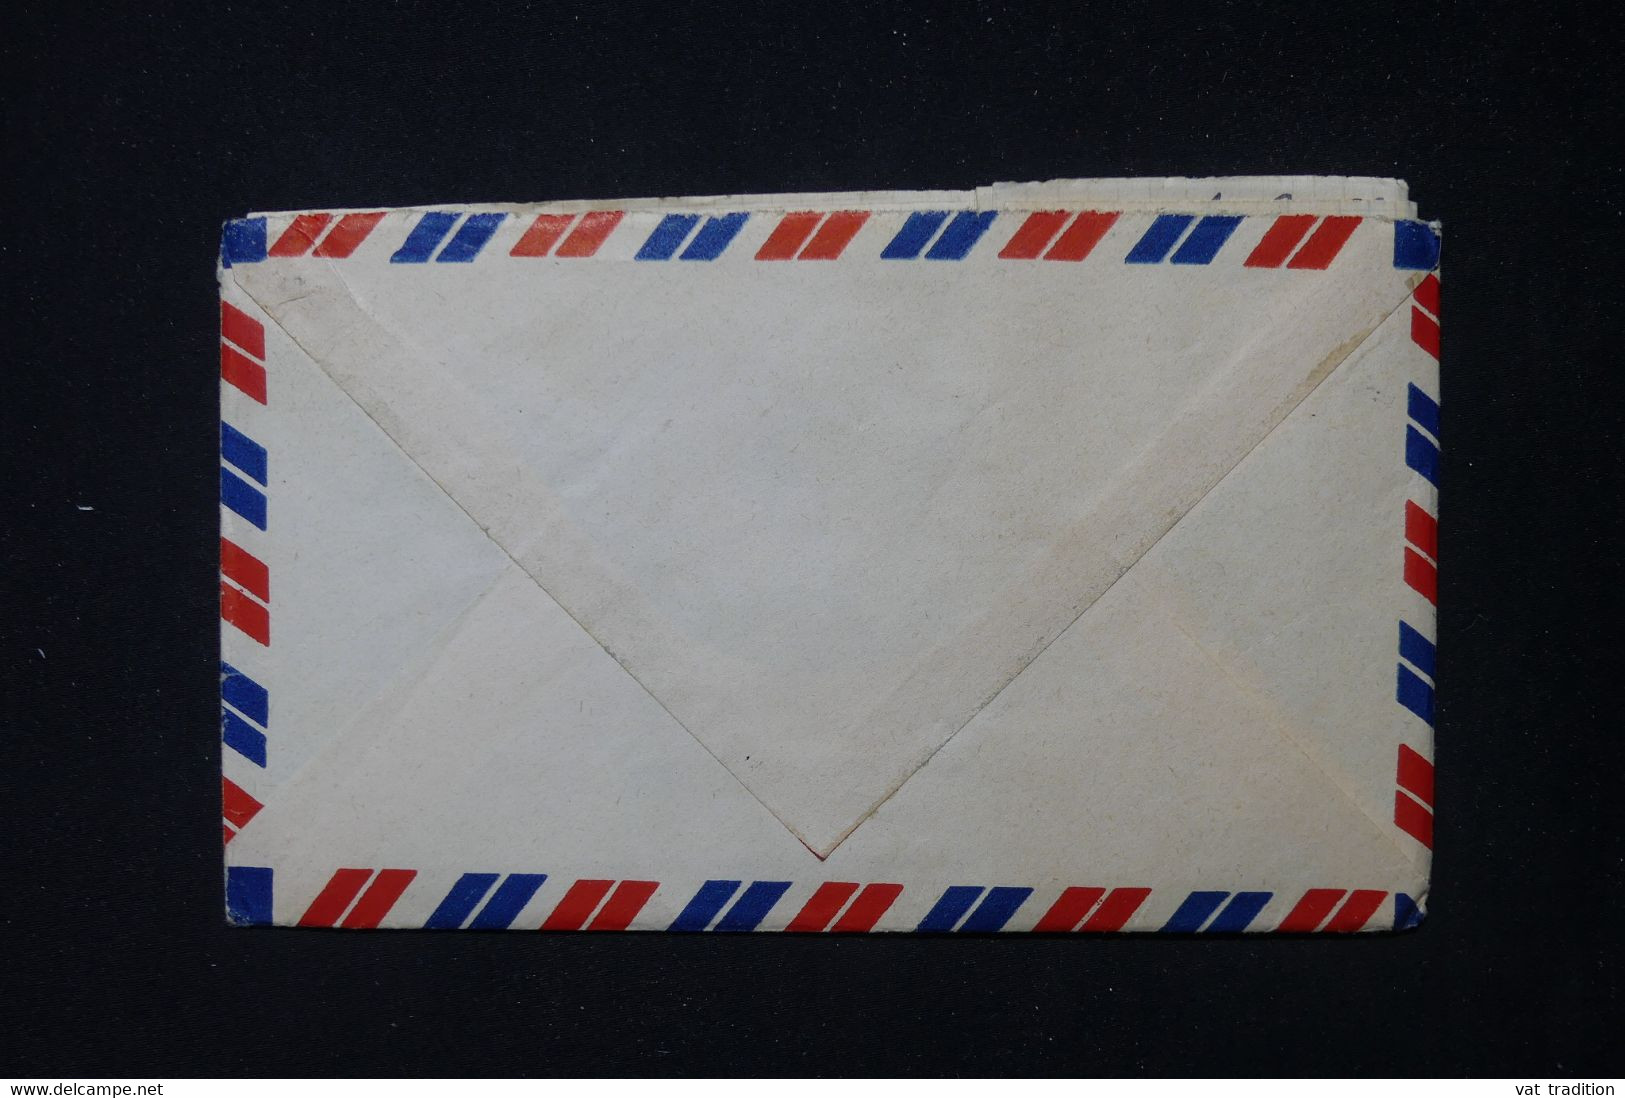 FRANCE / INDOCHINE - Enveloppe Avec Contenu D'un Marin En Indochine En 1952 Pour La France - L 83848 - Guerra De Indochina/Vietnam